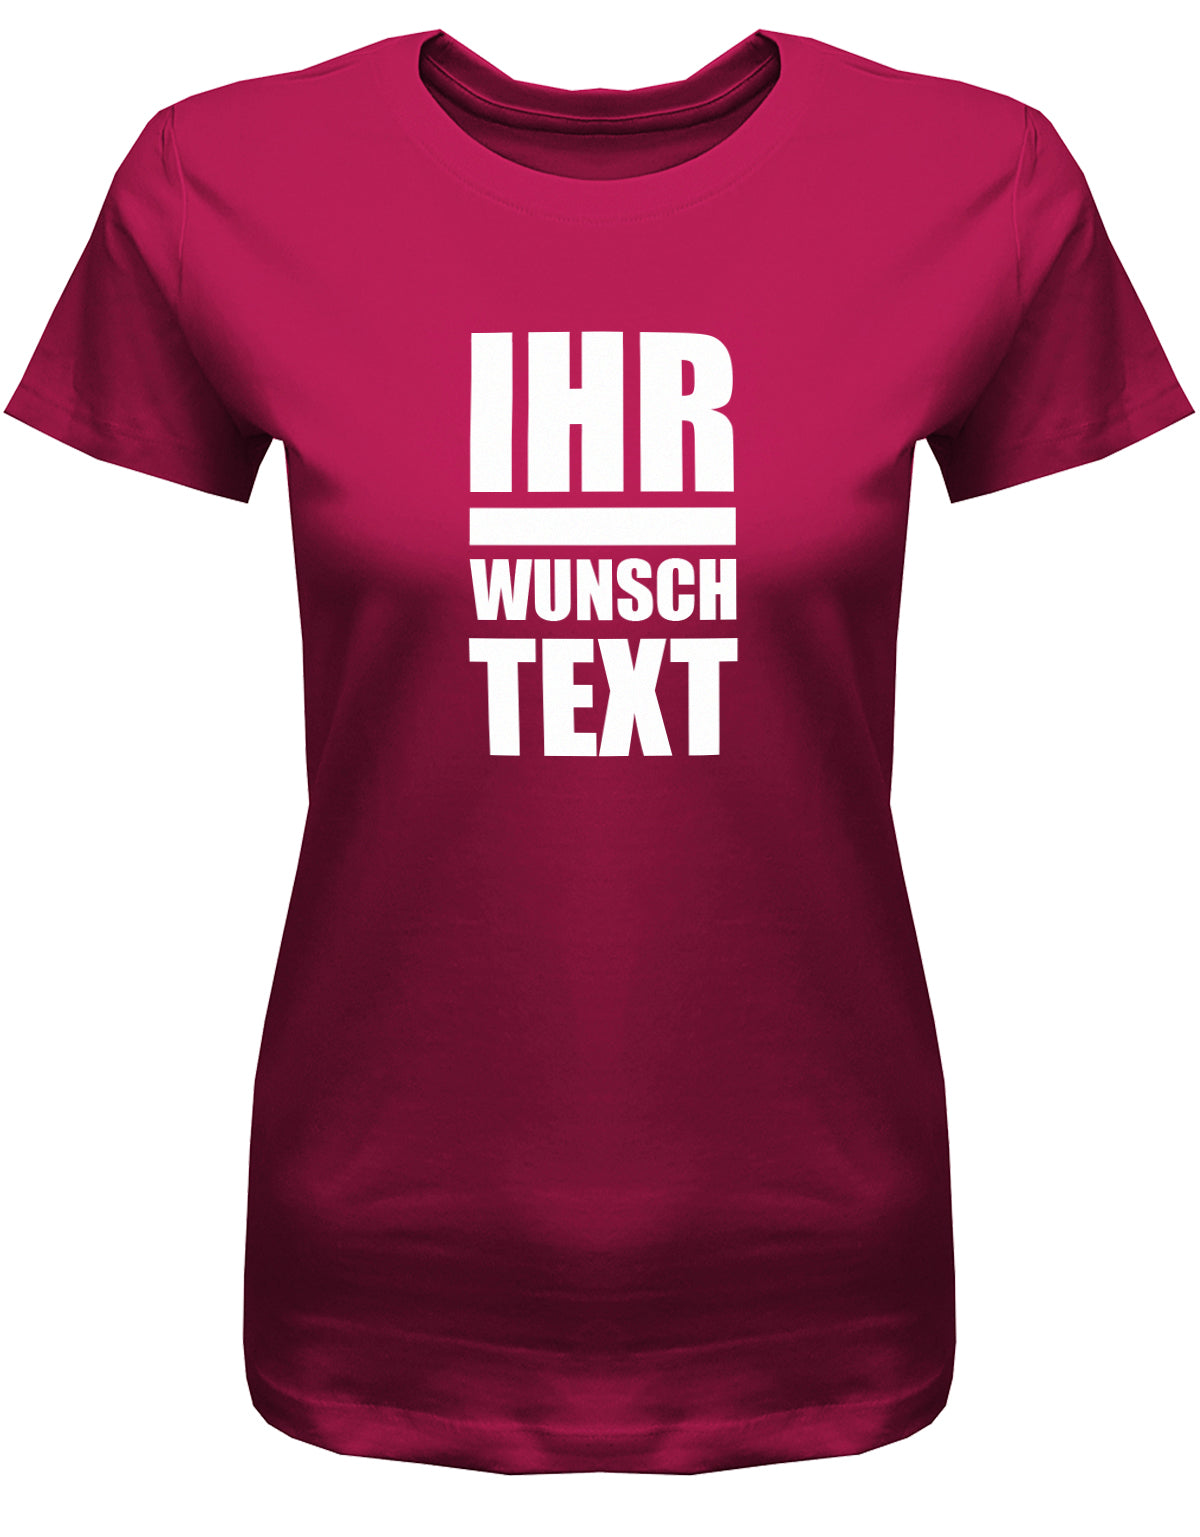 Frauen Tshirt mit Wunschtext.  Große Buchstaben mit Balken Block Style untereinander. Sorbet